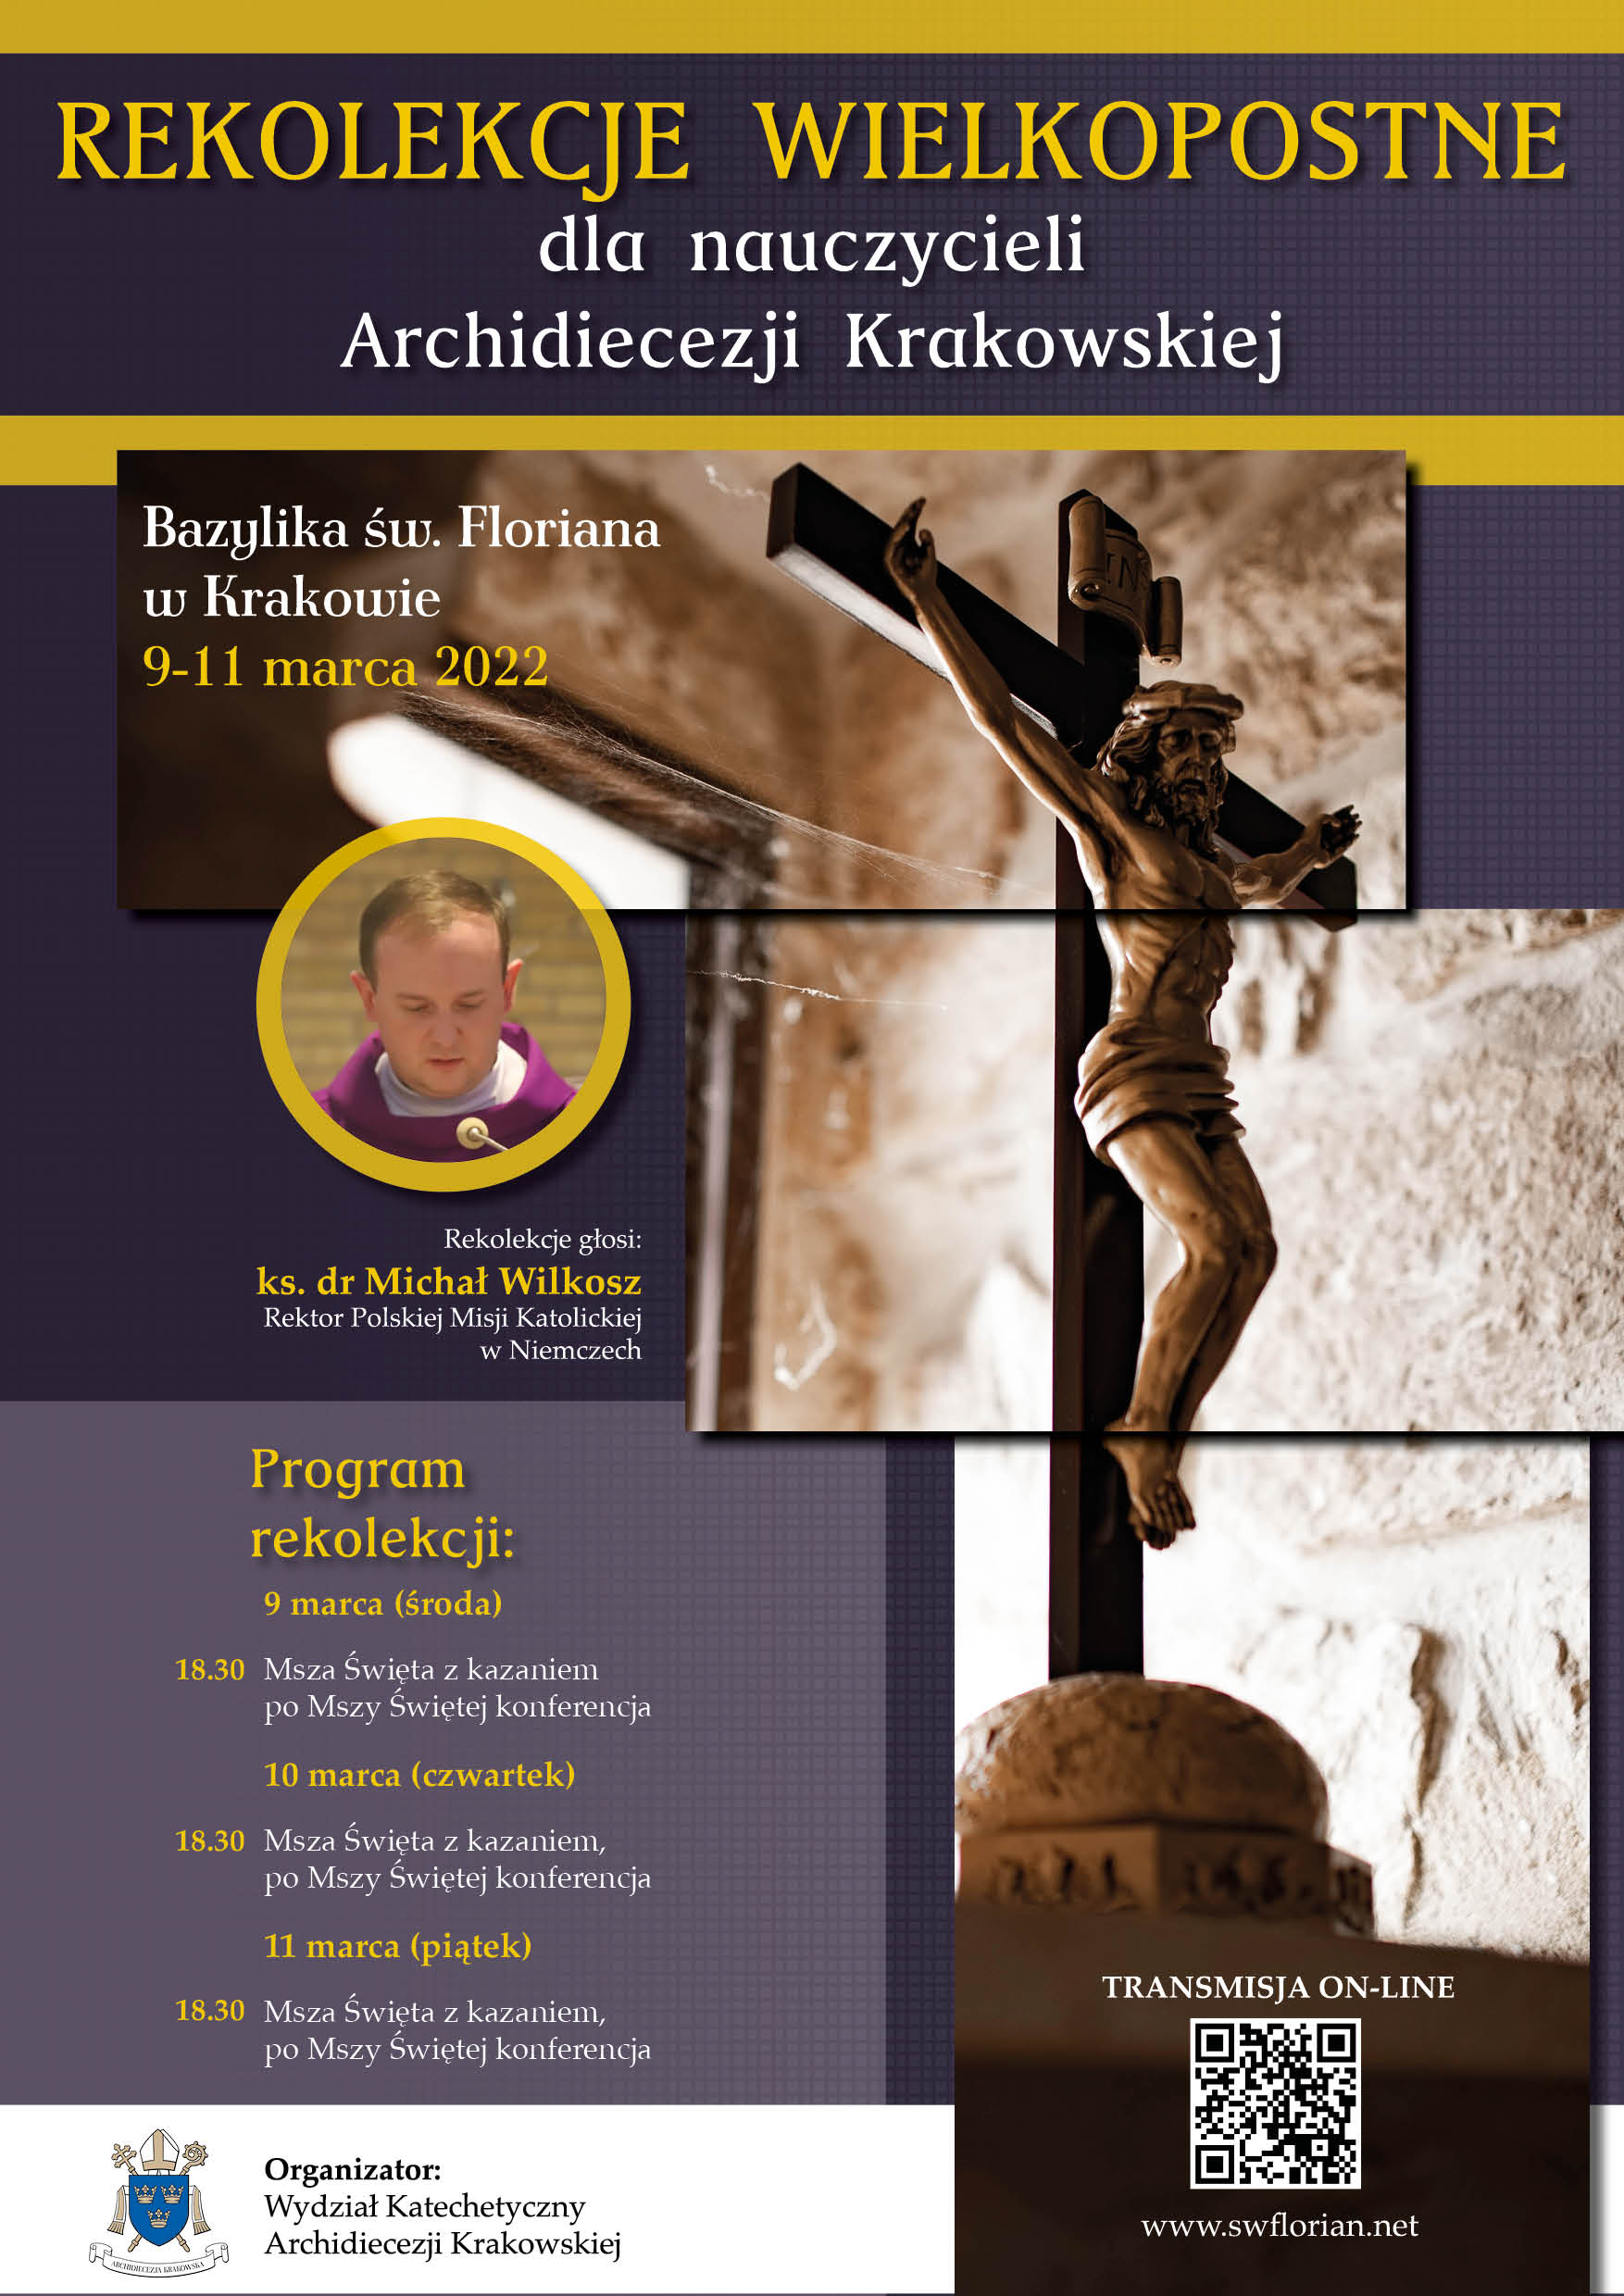 Wielkopostne rekolekcje dla nauczycieli Archidiecezji Krakowskiej